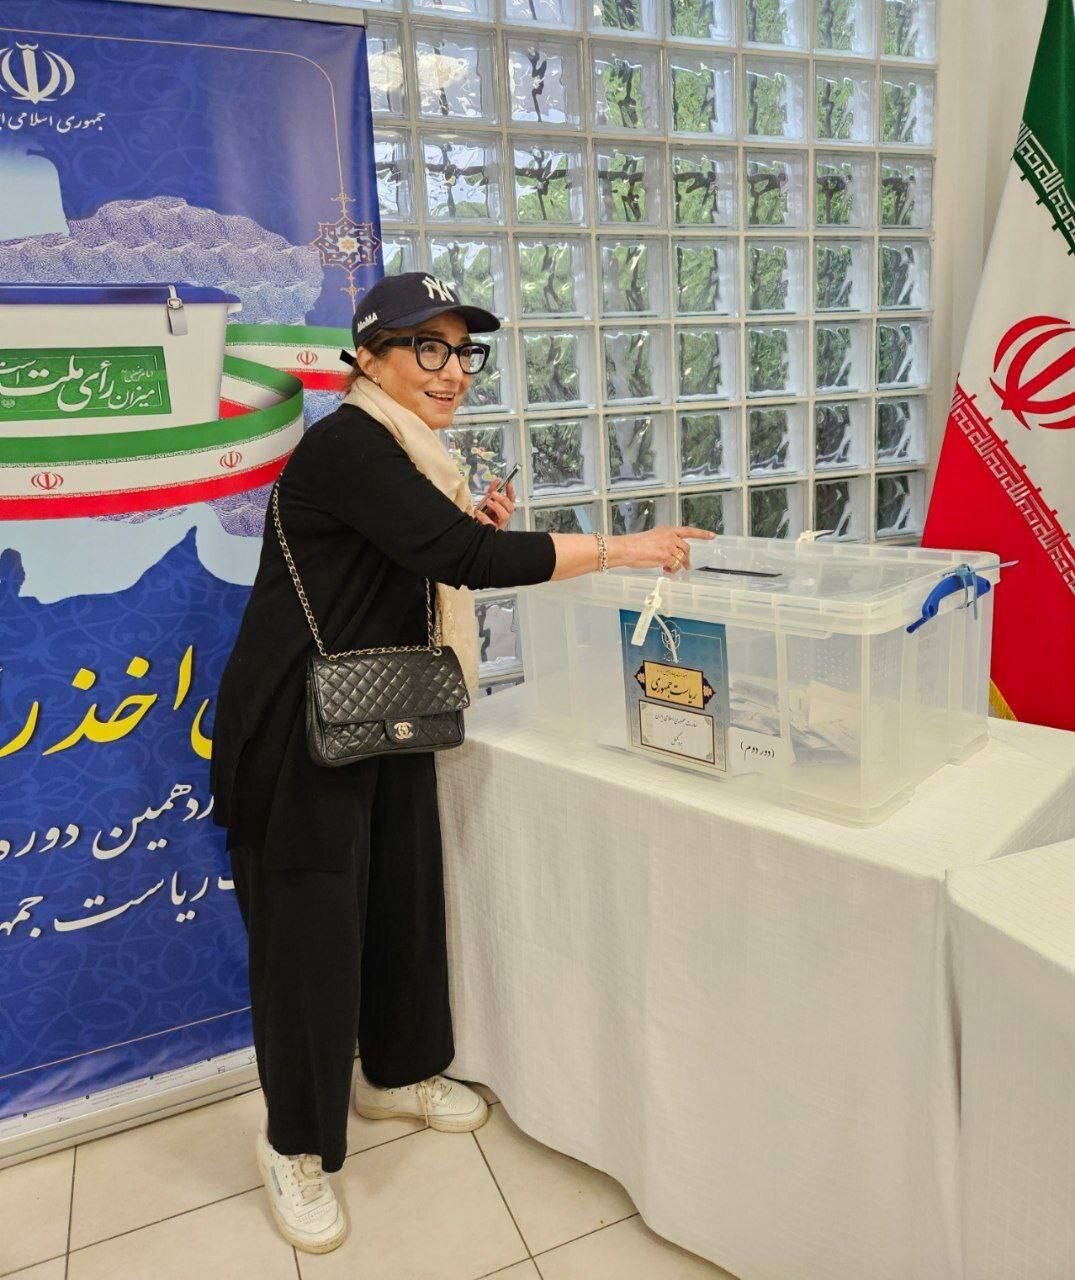 عکس جدید از الهه هیکس پای صندوق رأی بروکسل /زیدآبادی در کدام حوزه انتخابیه رأی داد؟ /بهادری جهرمی: استعفا نداده ام